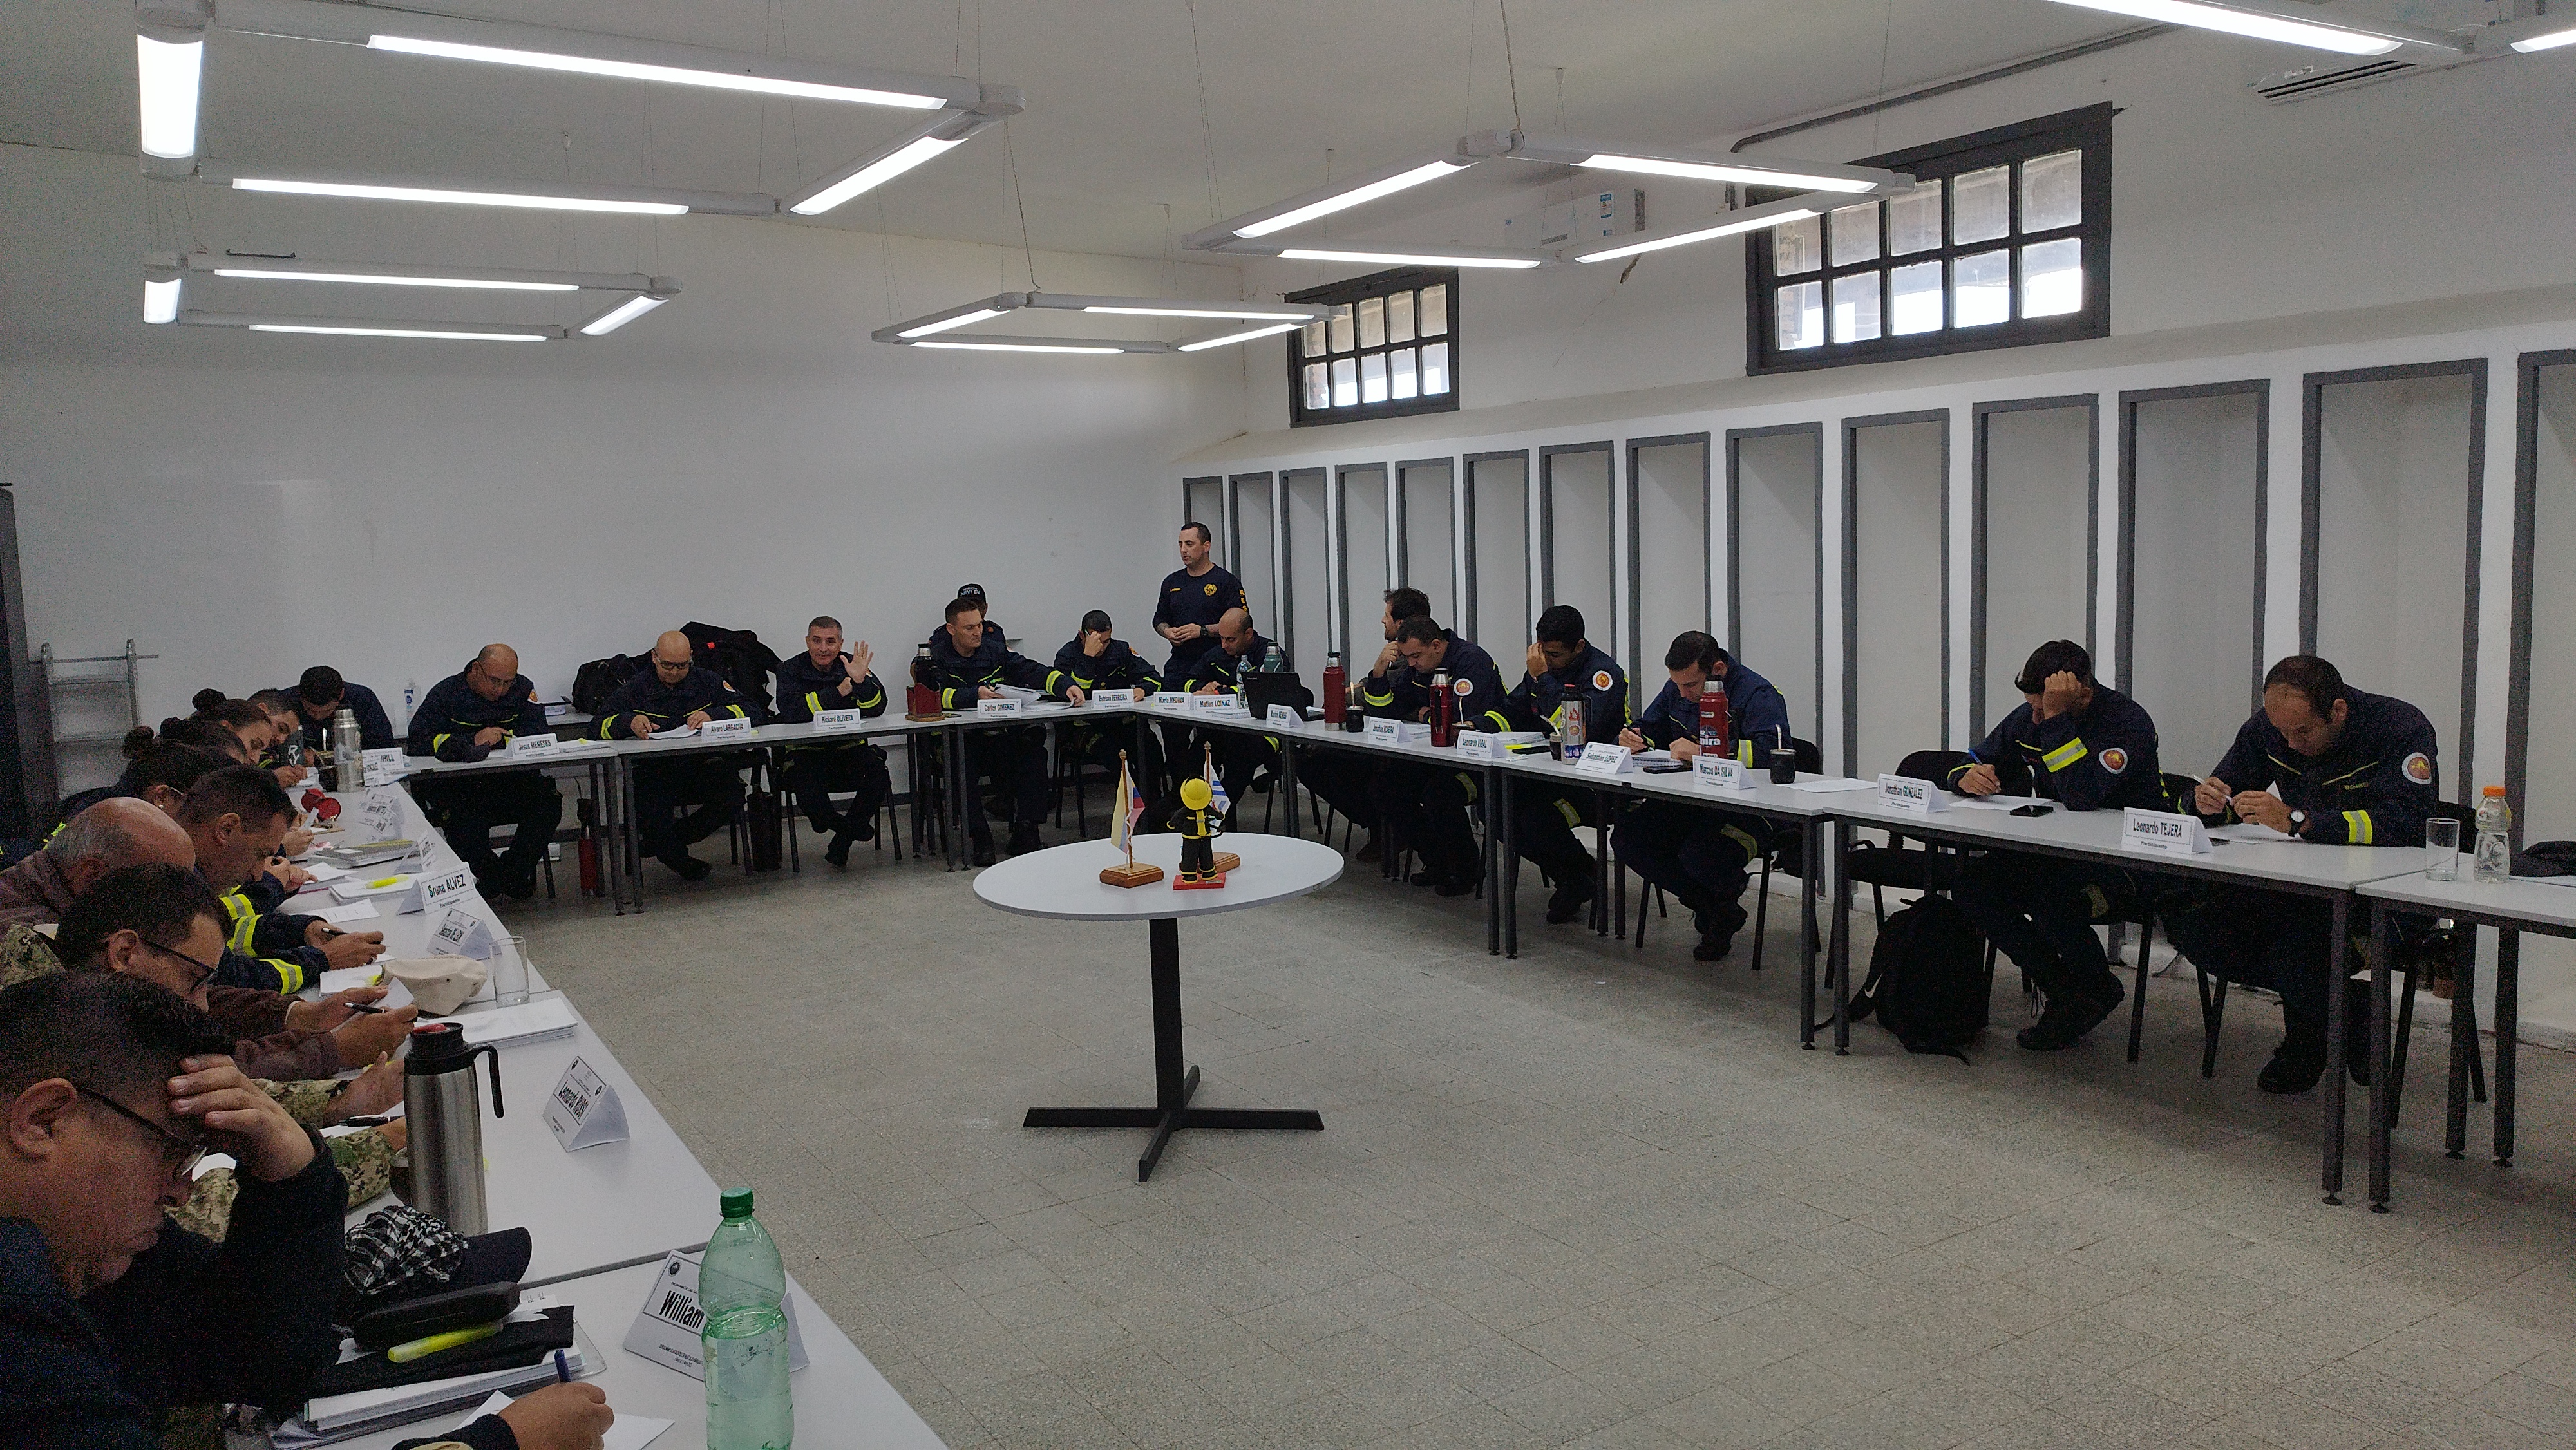 IMG_20230511_120945-Q9hv2RdO.jpg - El pasado jueves 11 de mayo culminó la &#034;Capacitación para bomberos sobre manejo de incidentes relacionados con la movilidad eléctrica&#034; en donde se capacitaron a 25 bomberos en la Base Aérea de Santa Bernardina del departamento de Durazno. Esta capacitación es la continuación del primer curso regional que organizó la plataforma MOVE del Programa de la Naciones Unidas para el Medio Ambiente a finales de 2022 en Paraguay, donde participaron y se formaron dos bomberos instructores de Uruguay.